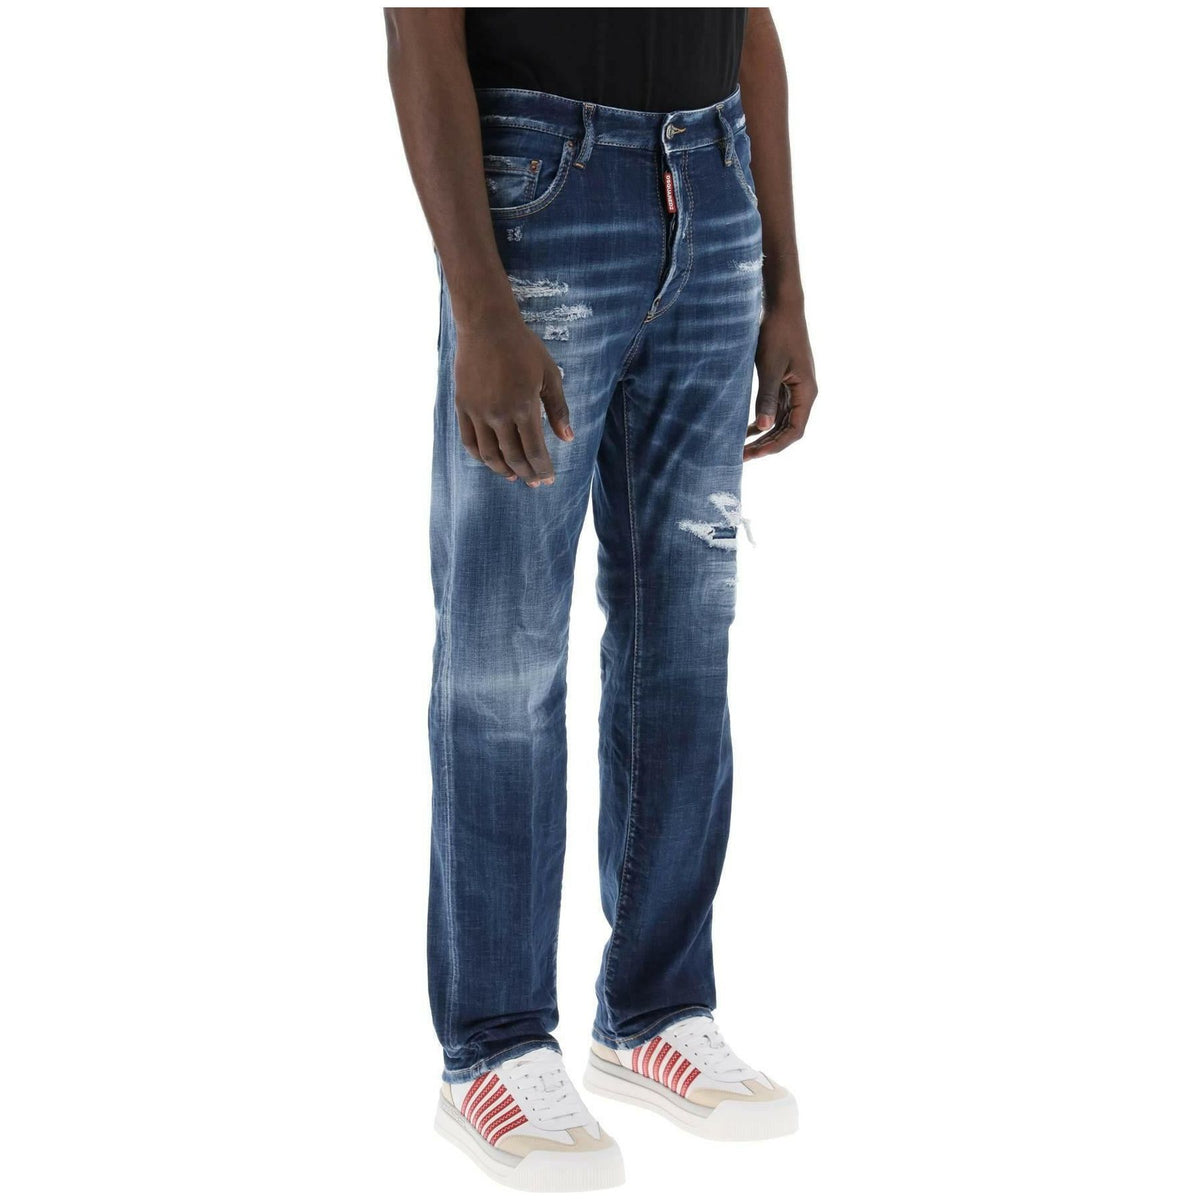 DSQUARED2 - 642 Jeans In Denim Destroyed Wash - JOHN JULIA